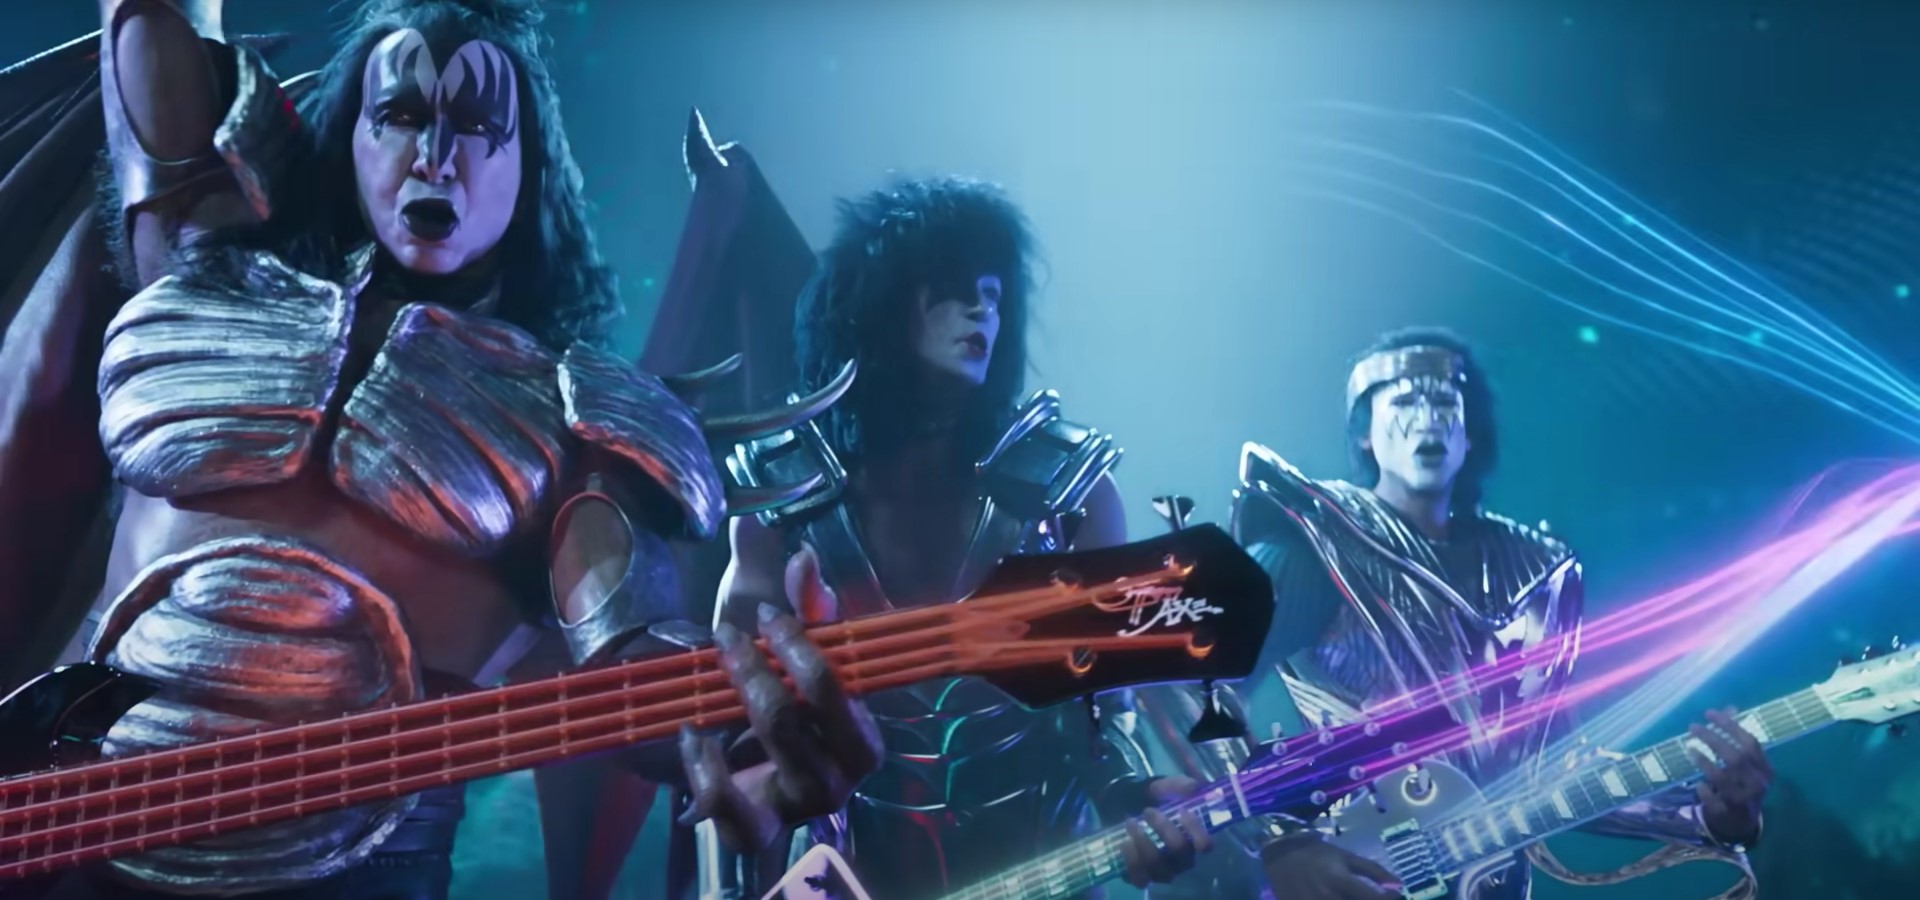 🎸 Легендарний рок-гурт Kiss анонсував «нову еру» та продовжить виступи як віртуальний гурт